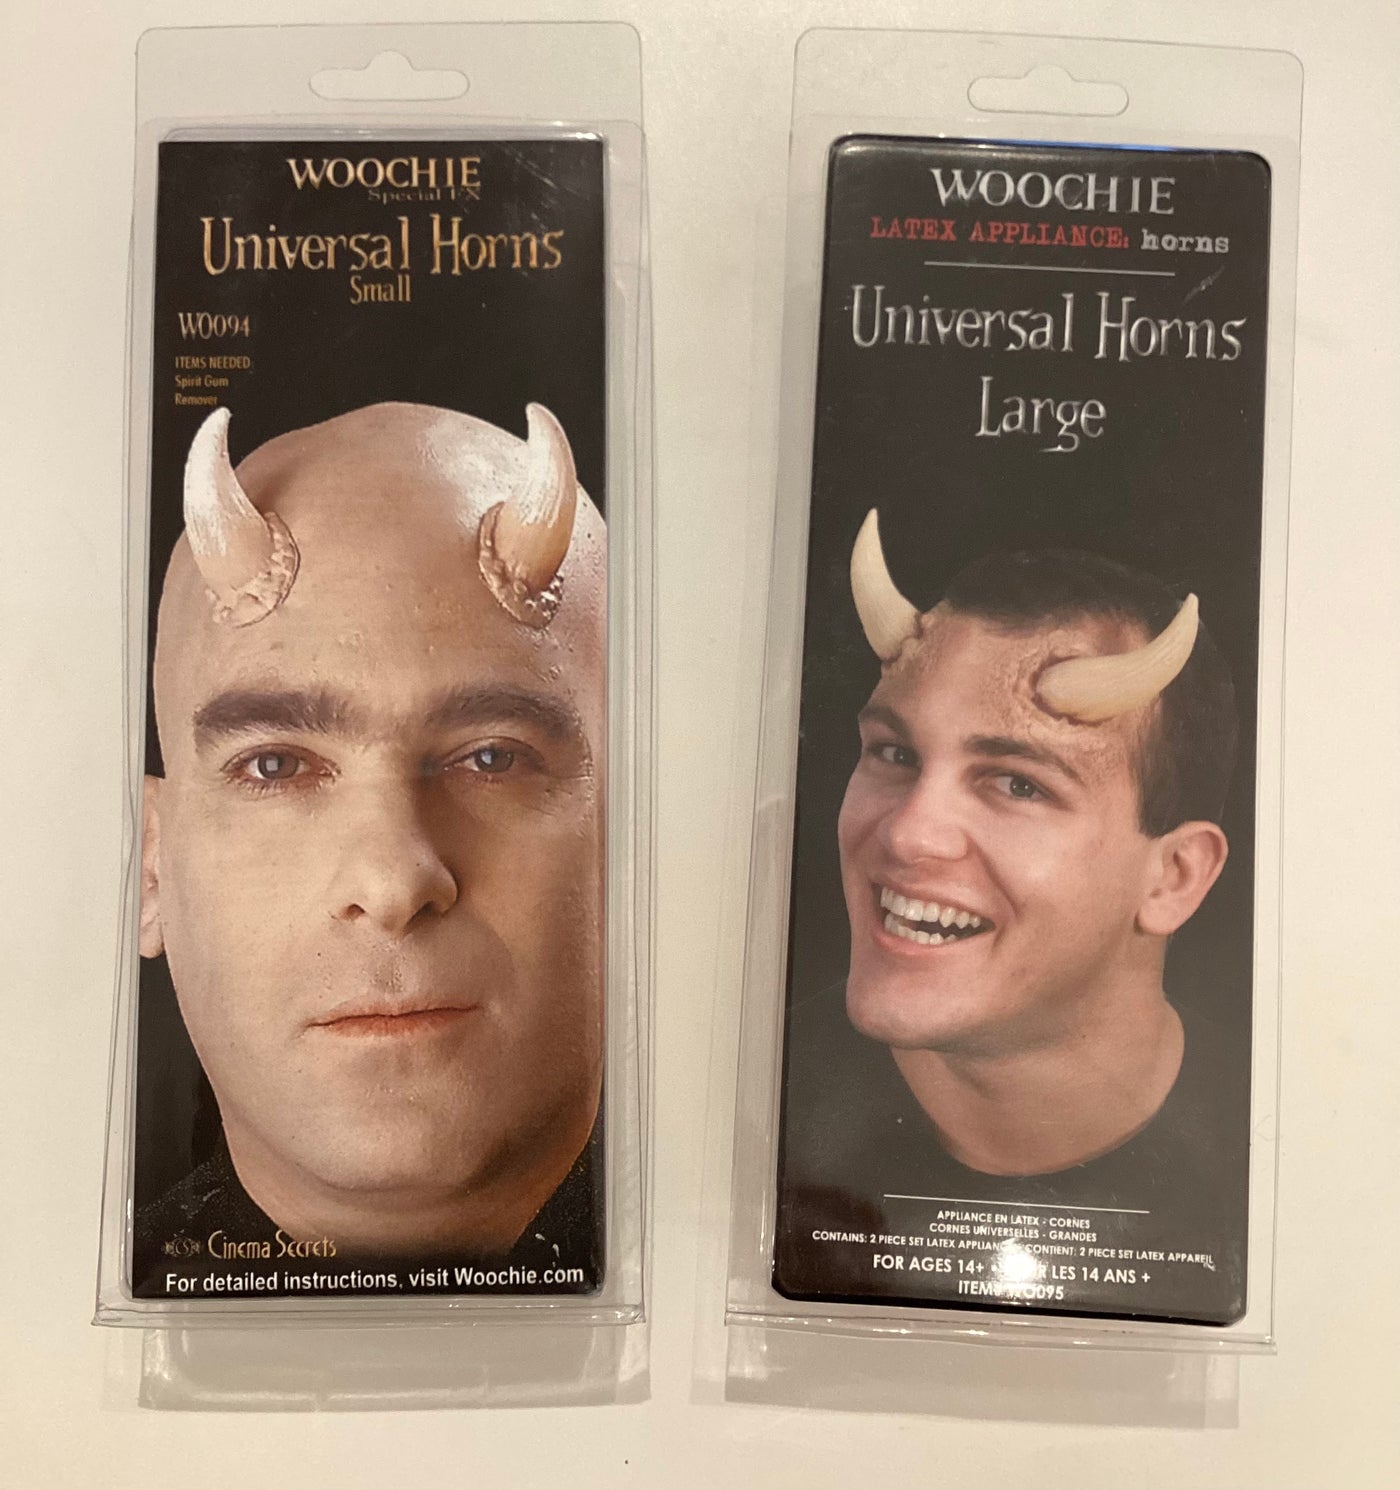 Woochie universal horns